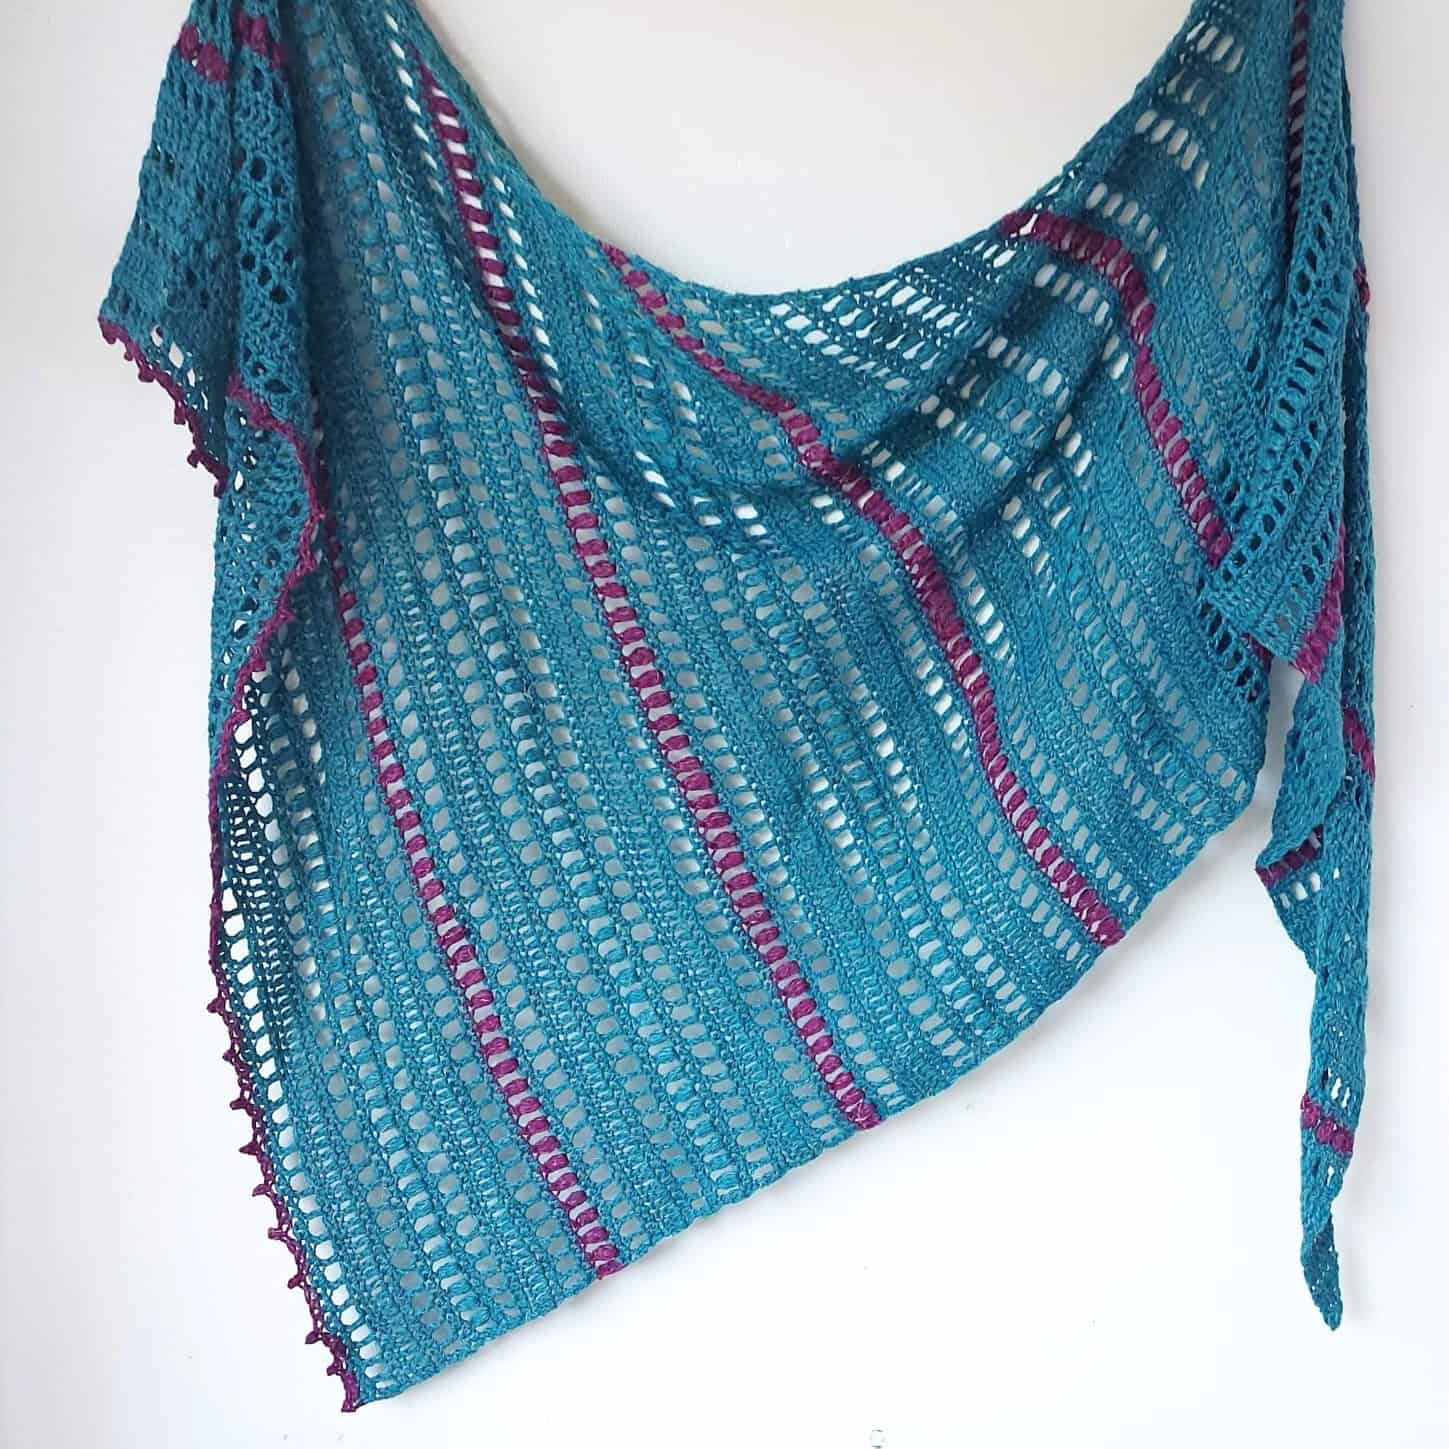 Asymmetrical triangular cloth crocheted